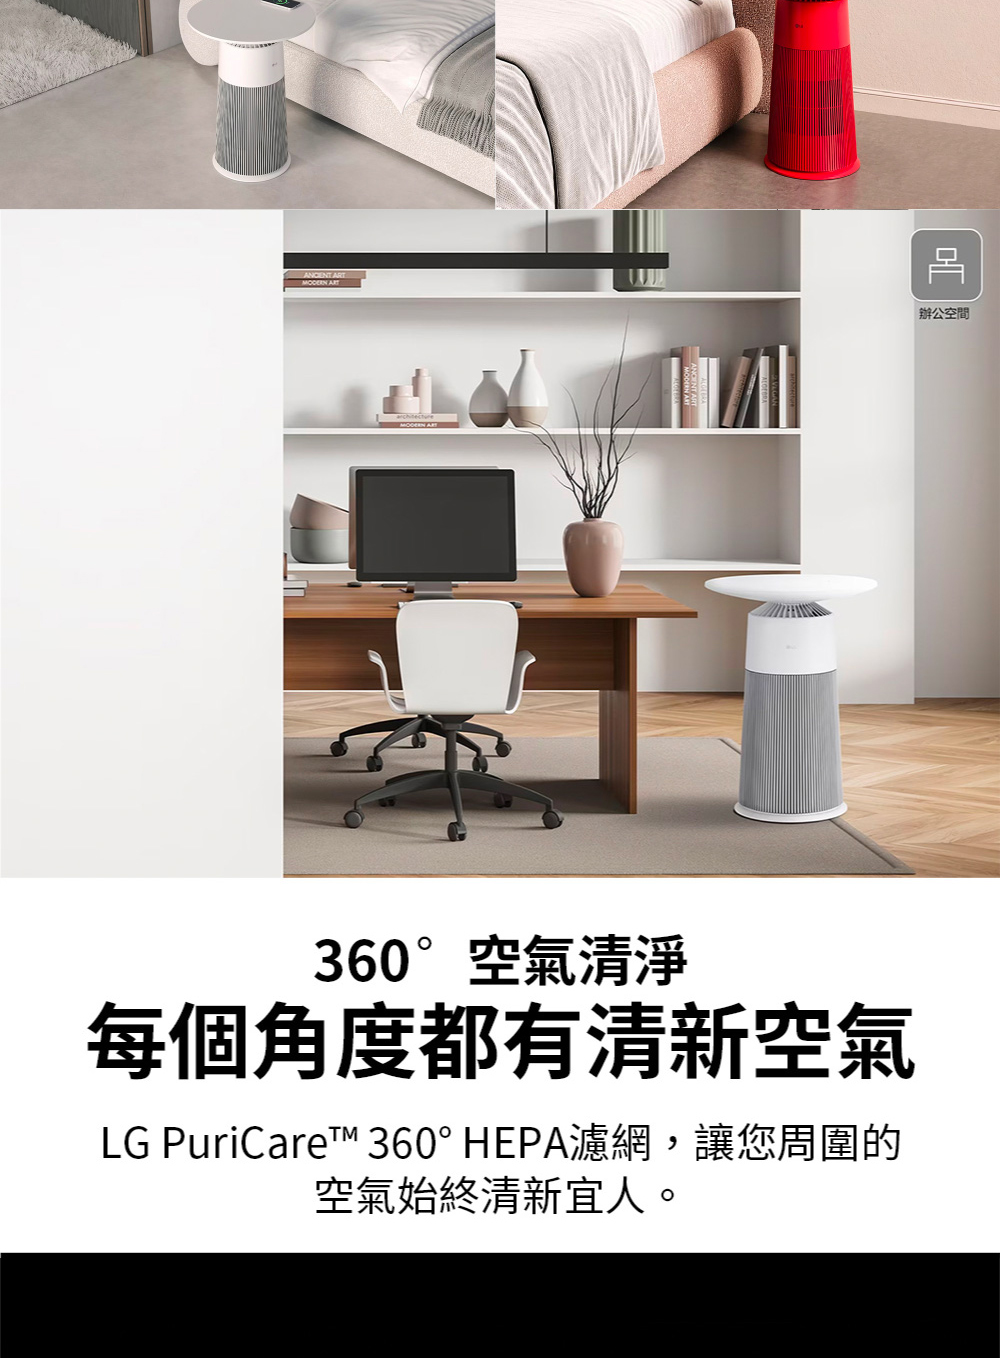 辦公空間360°空氣清淨每個角度都有清新空氣LG PuriCare™ 360° HEPA濾網,讓您周圍的空氣始終清新宜人。